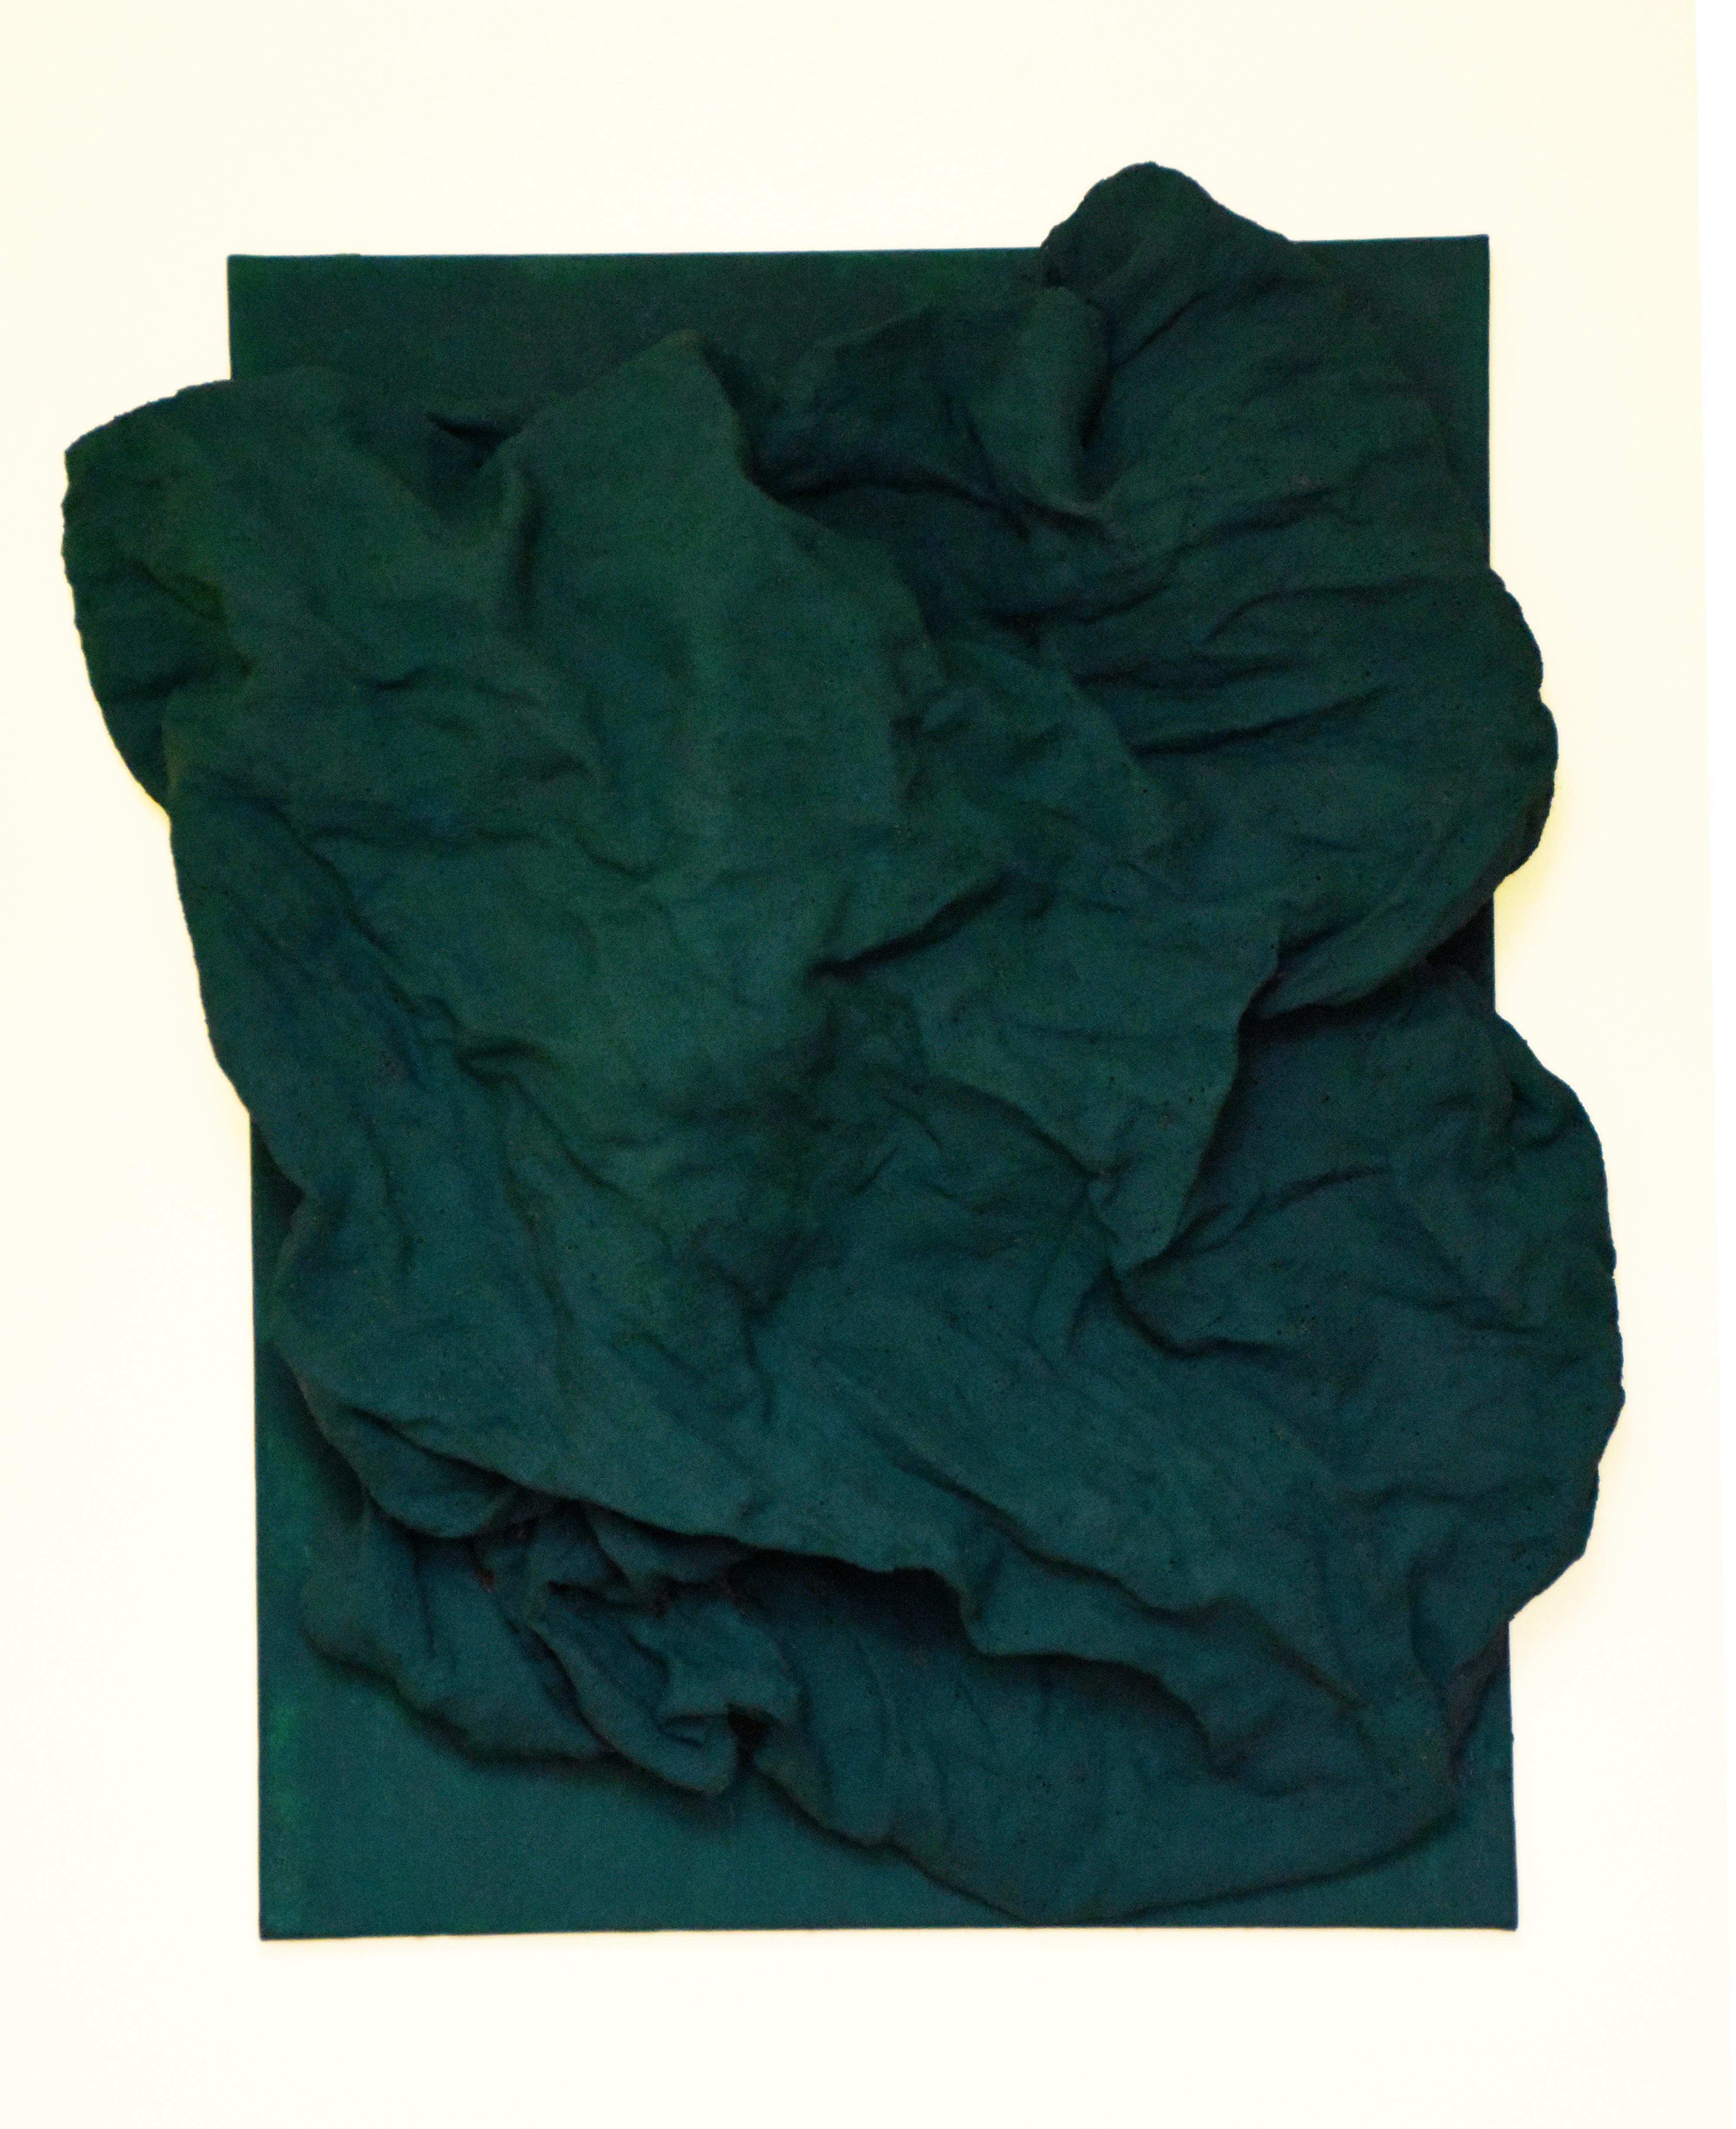 Chloe Hedden Abstract Sculpture - Emerald Green Folds (hardened fabric, wall green art, contemporary art design)